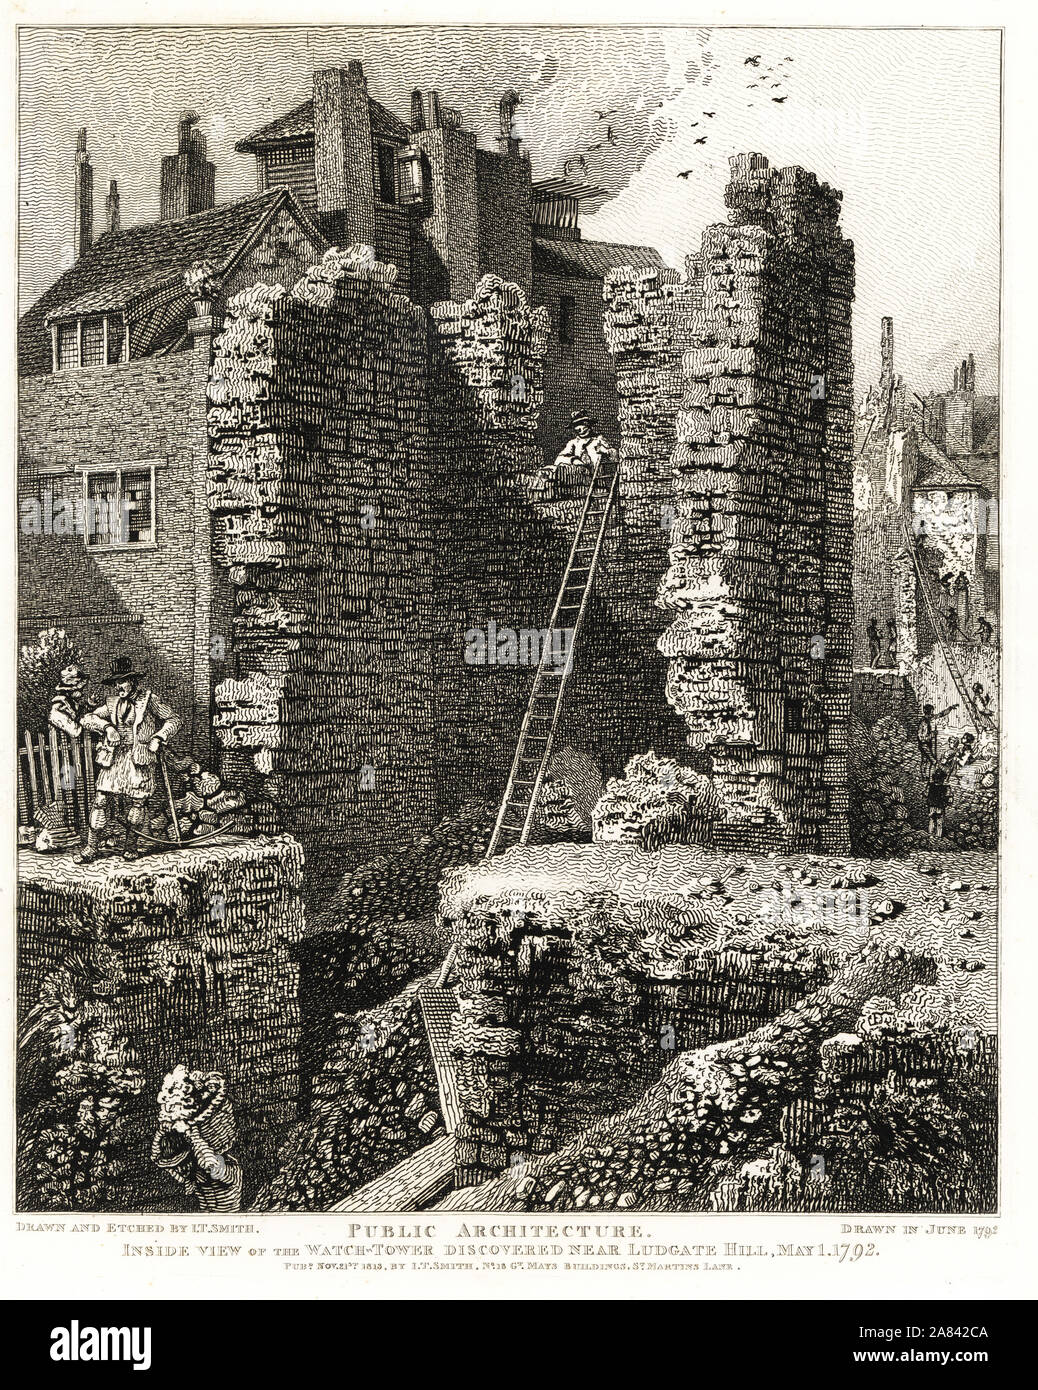 Vue intérieure de la Watch Tower a découvert près de Ludgate Hill, le 1 mai 1792. Barbican ou partie de l'ancien mur de la ville de 1276. La gravure sur cuivre gravé et dessiné par John Thomas Smith, de sa topographie, de London, en 1813. Banque D'Images